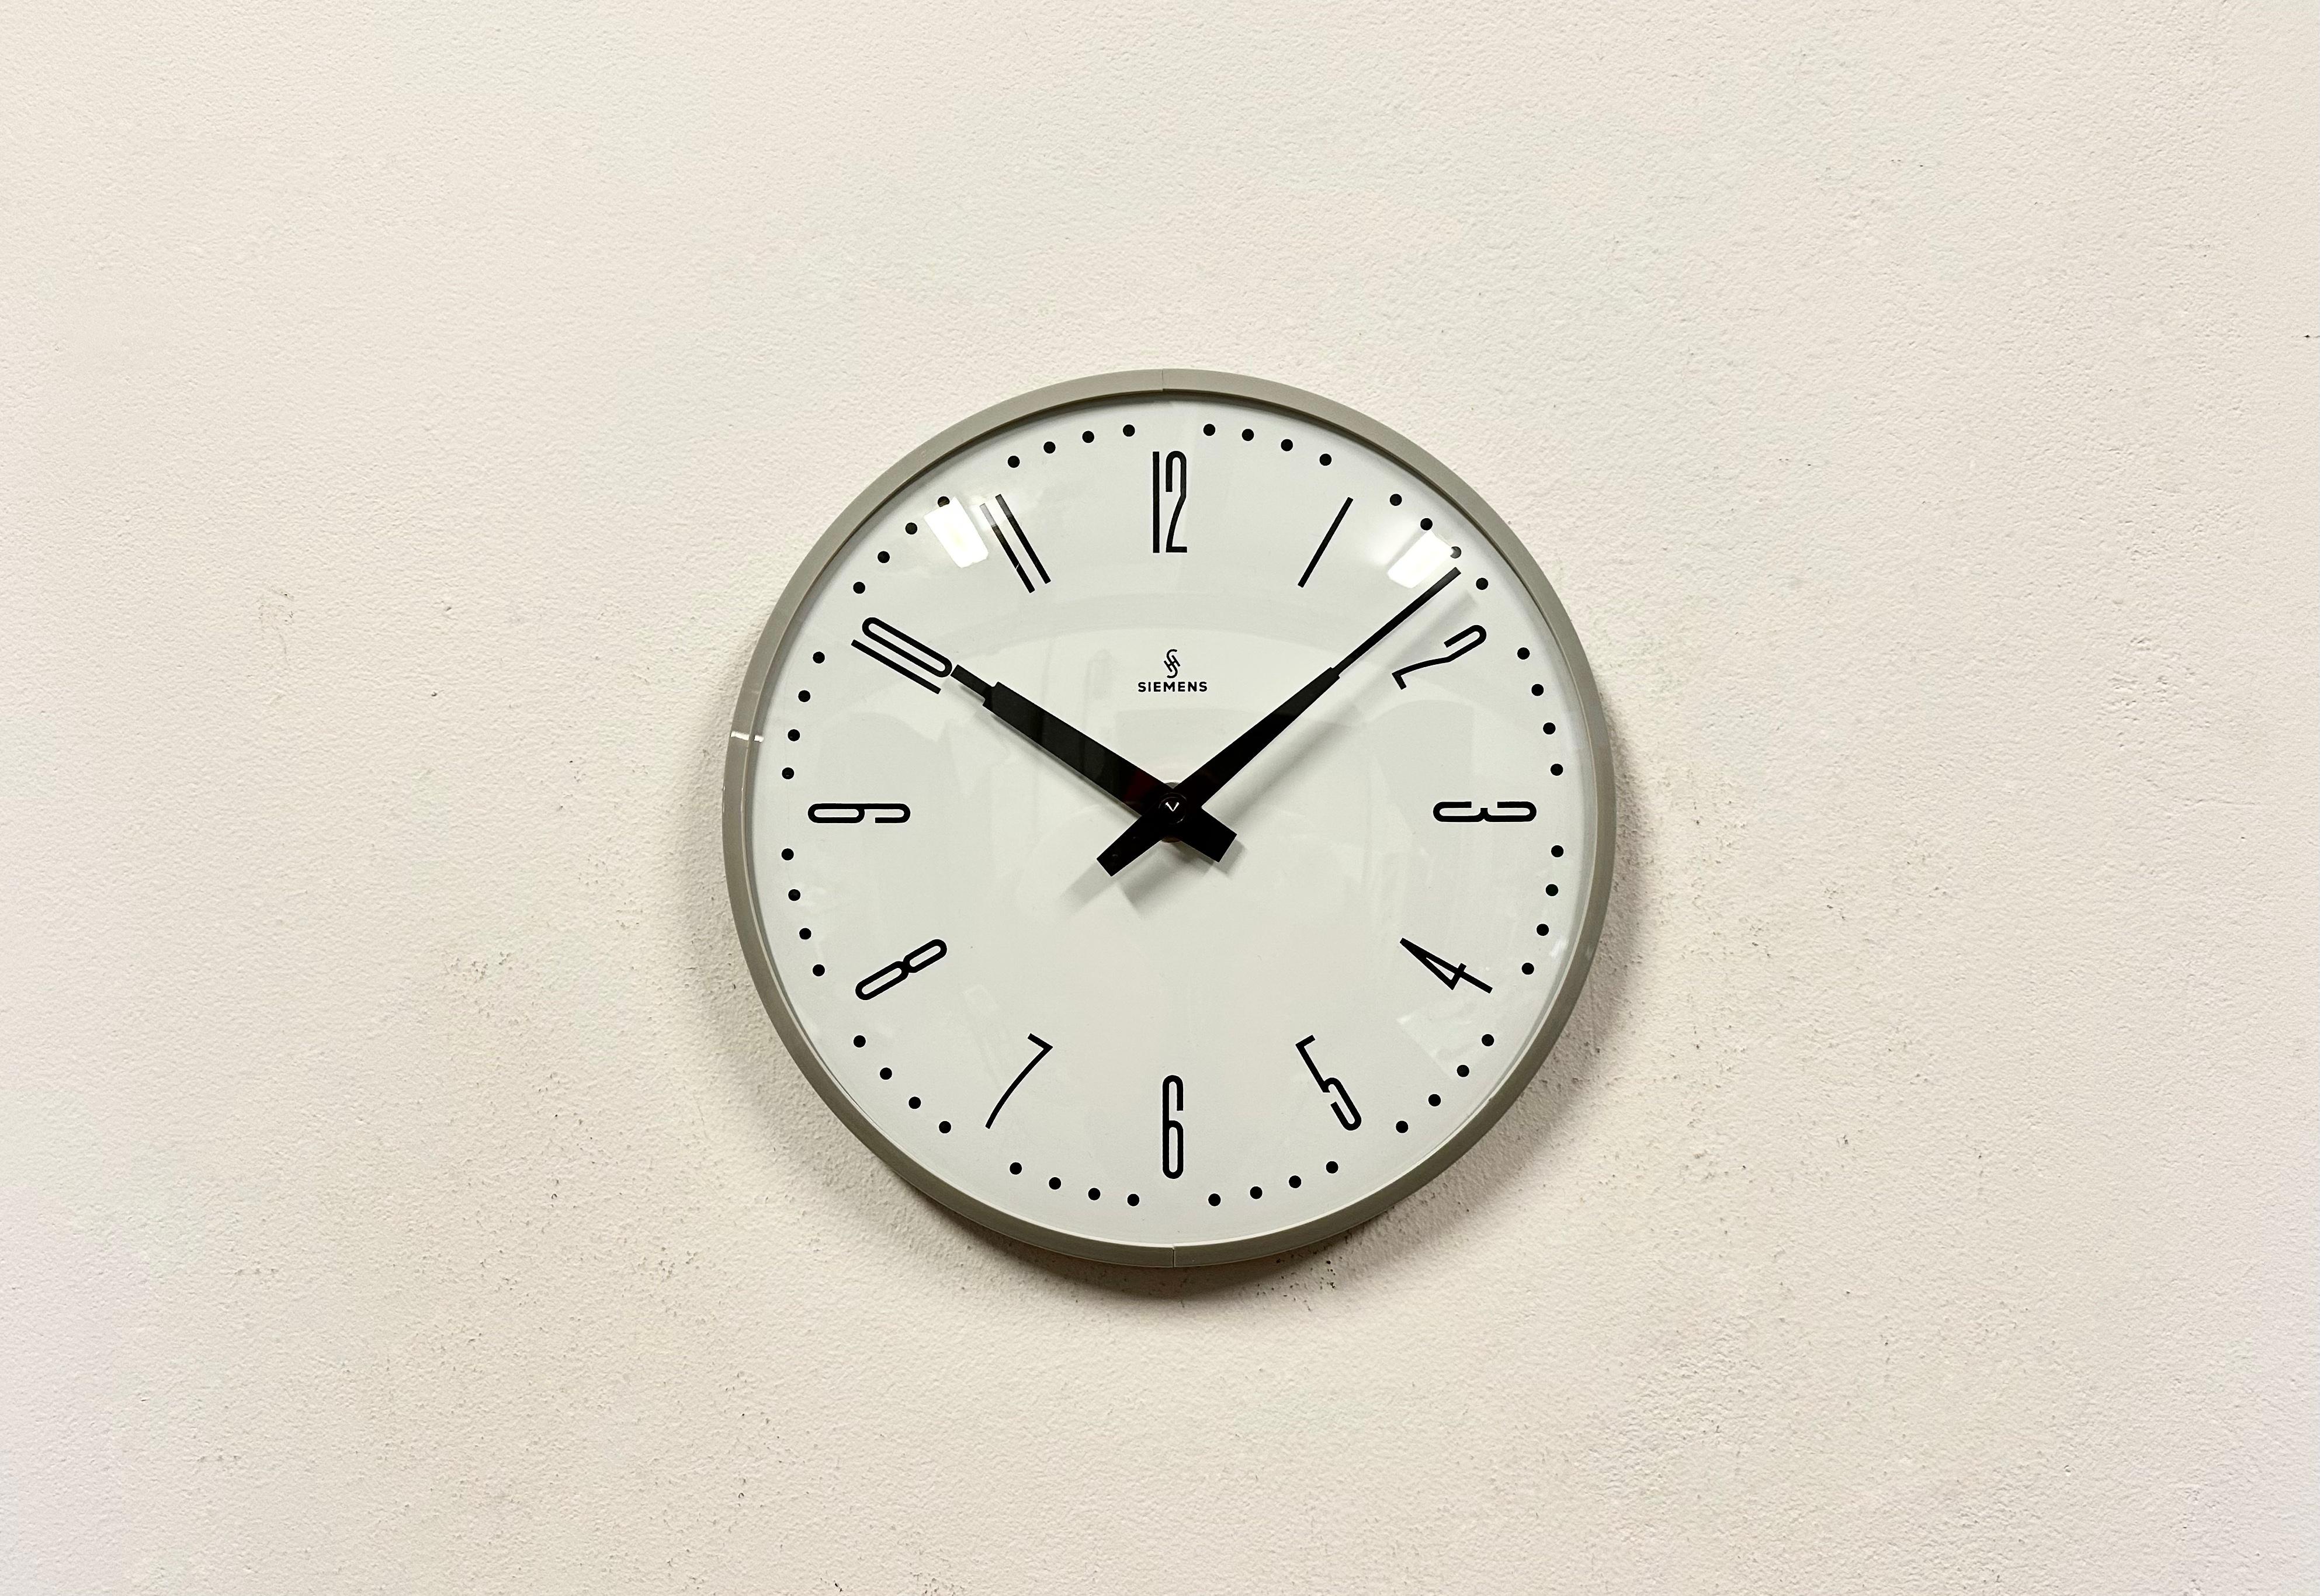 Cette horloge murale a été produite par Siemens en Allemagne dans les années 1970. Elle se compose d'un cadre en bakélite grise, d'un cadran en métal et d'un couvercle en verre transparent convexe. La pièce a été convertie en un mécanisme